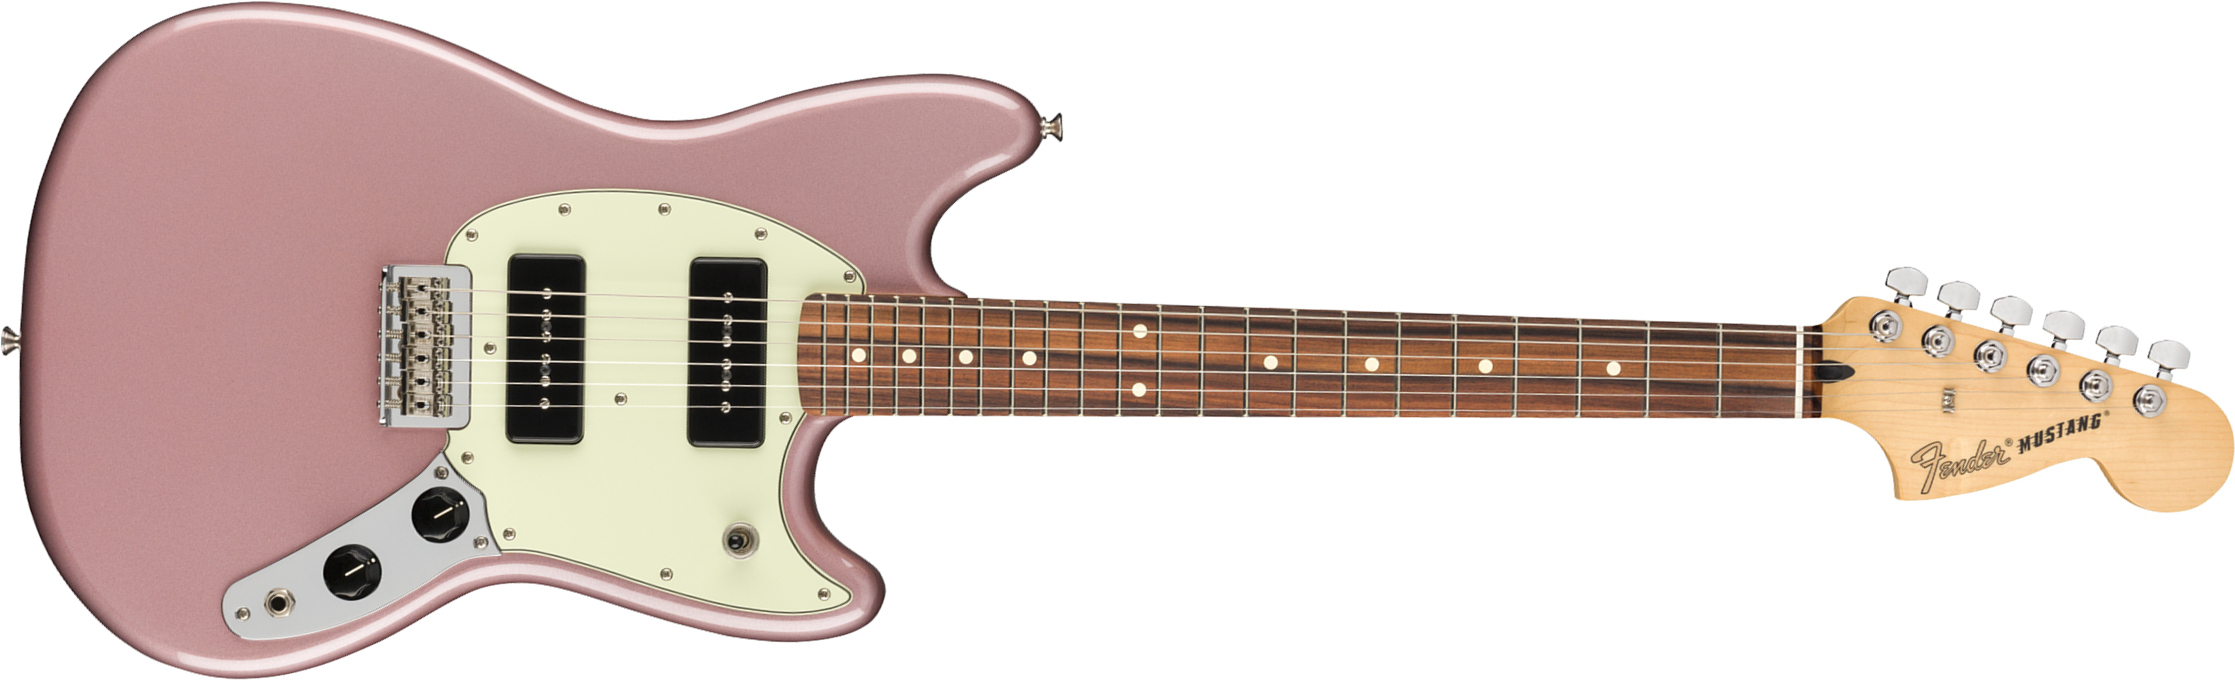 Fender Mustang Player 90 Mex Ht 2p90 Pf - Burgundy Mist Metallic - Guitare Électrique RÉtro Rock - Main picture